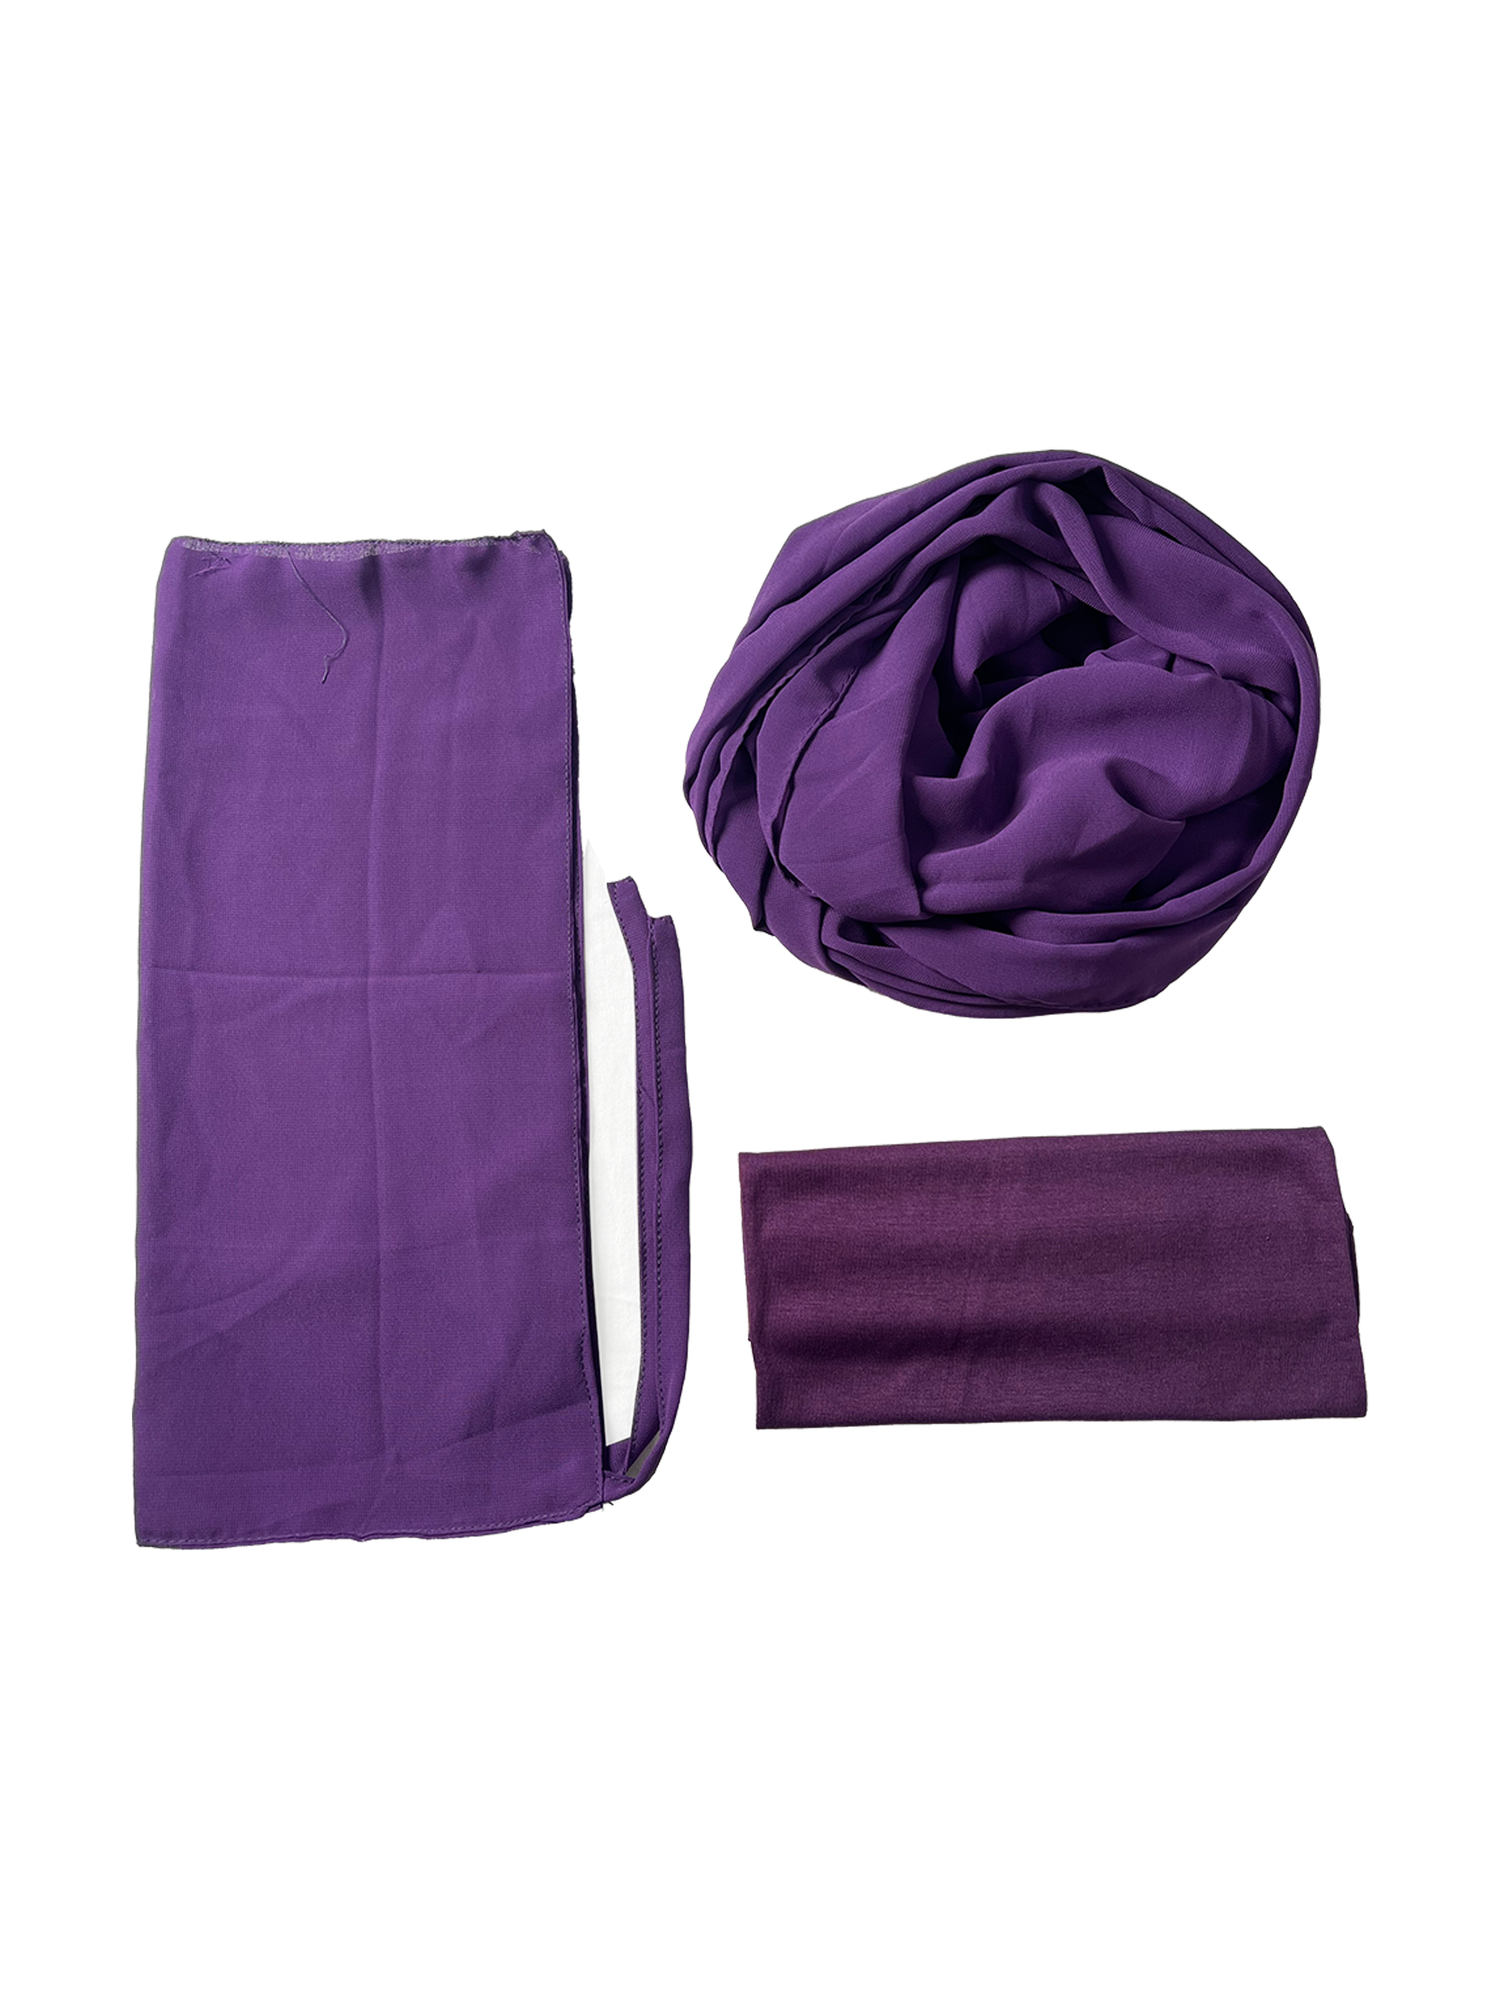 Hijab and Niqab set in Purple